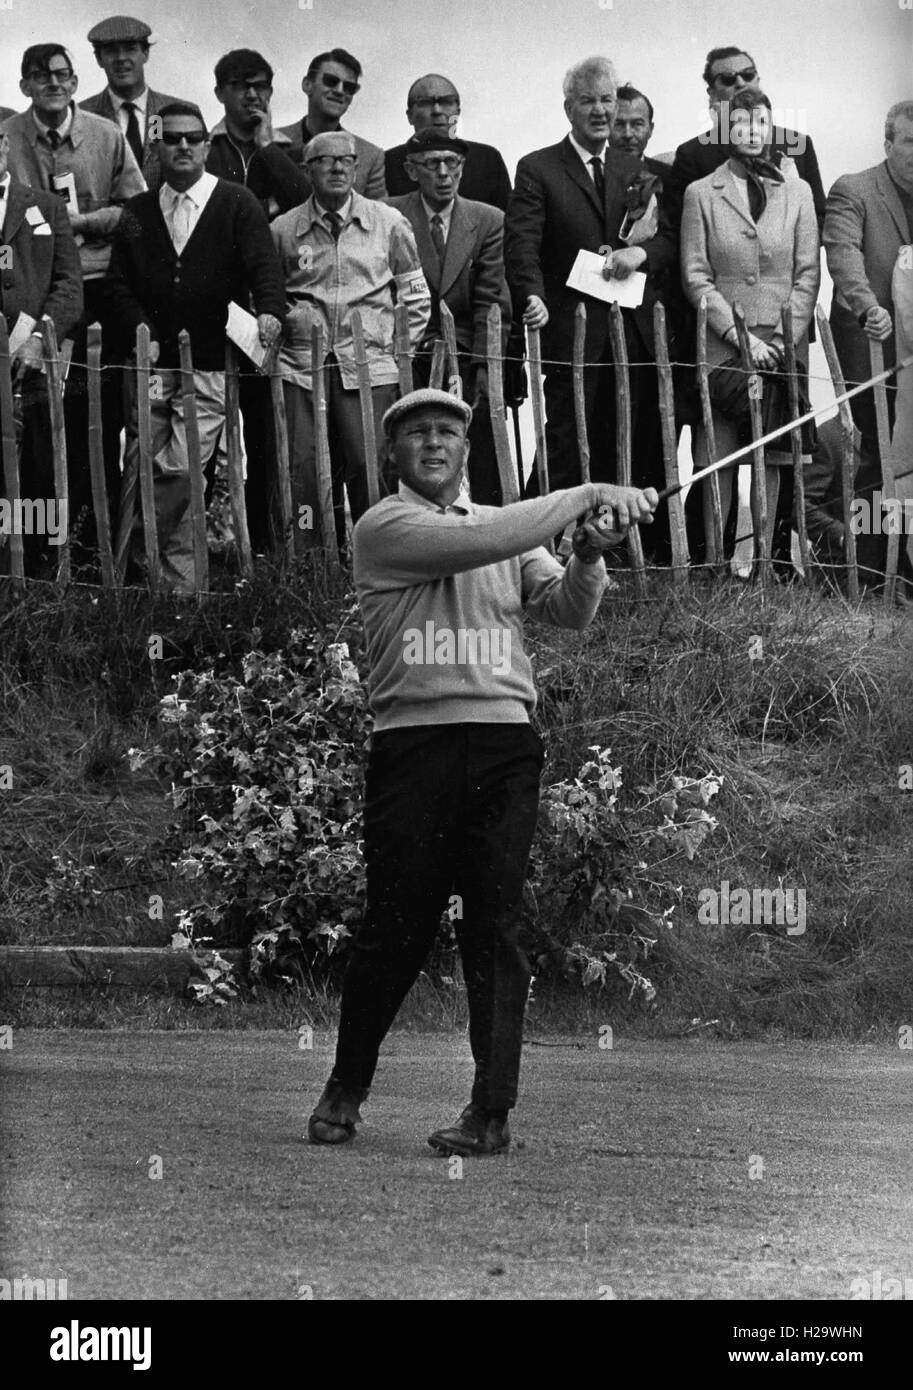 ARNOLD PALMER (10. September 1929 - 25. September 2016) war ein amerikanischer Profi-Golfer, der im Allgemeinen als einer der größten Spieler in der Profi-Golf-Geschichte gilt. Er gewann zahlreiche Events auf der PGA Tour und Champions Tour, bis 1955 zurückreichen. Den Spitznamen "The King", war er einer der populärsten Stars des Golfsports und seine wichtigsten Wegbereiter, weil er der erste Superstar der Sport Fernsehen alt, war die in den 1950er Jahren begann. Bild: 7. Juni 1965 - putts Southdale, England, Vereinigtes Königreich - ARNOLD PALMER während der 1965 Open Championship in Royal Birkdale. (Kredit-Bild: © G Stockfoto